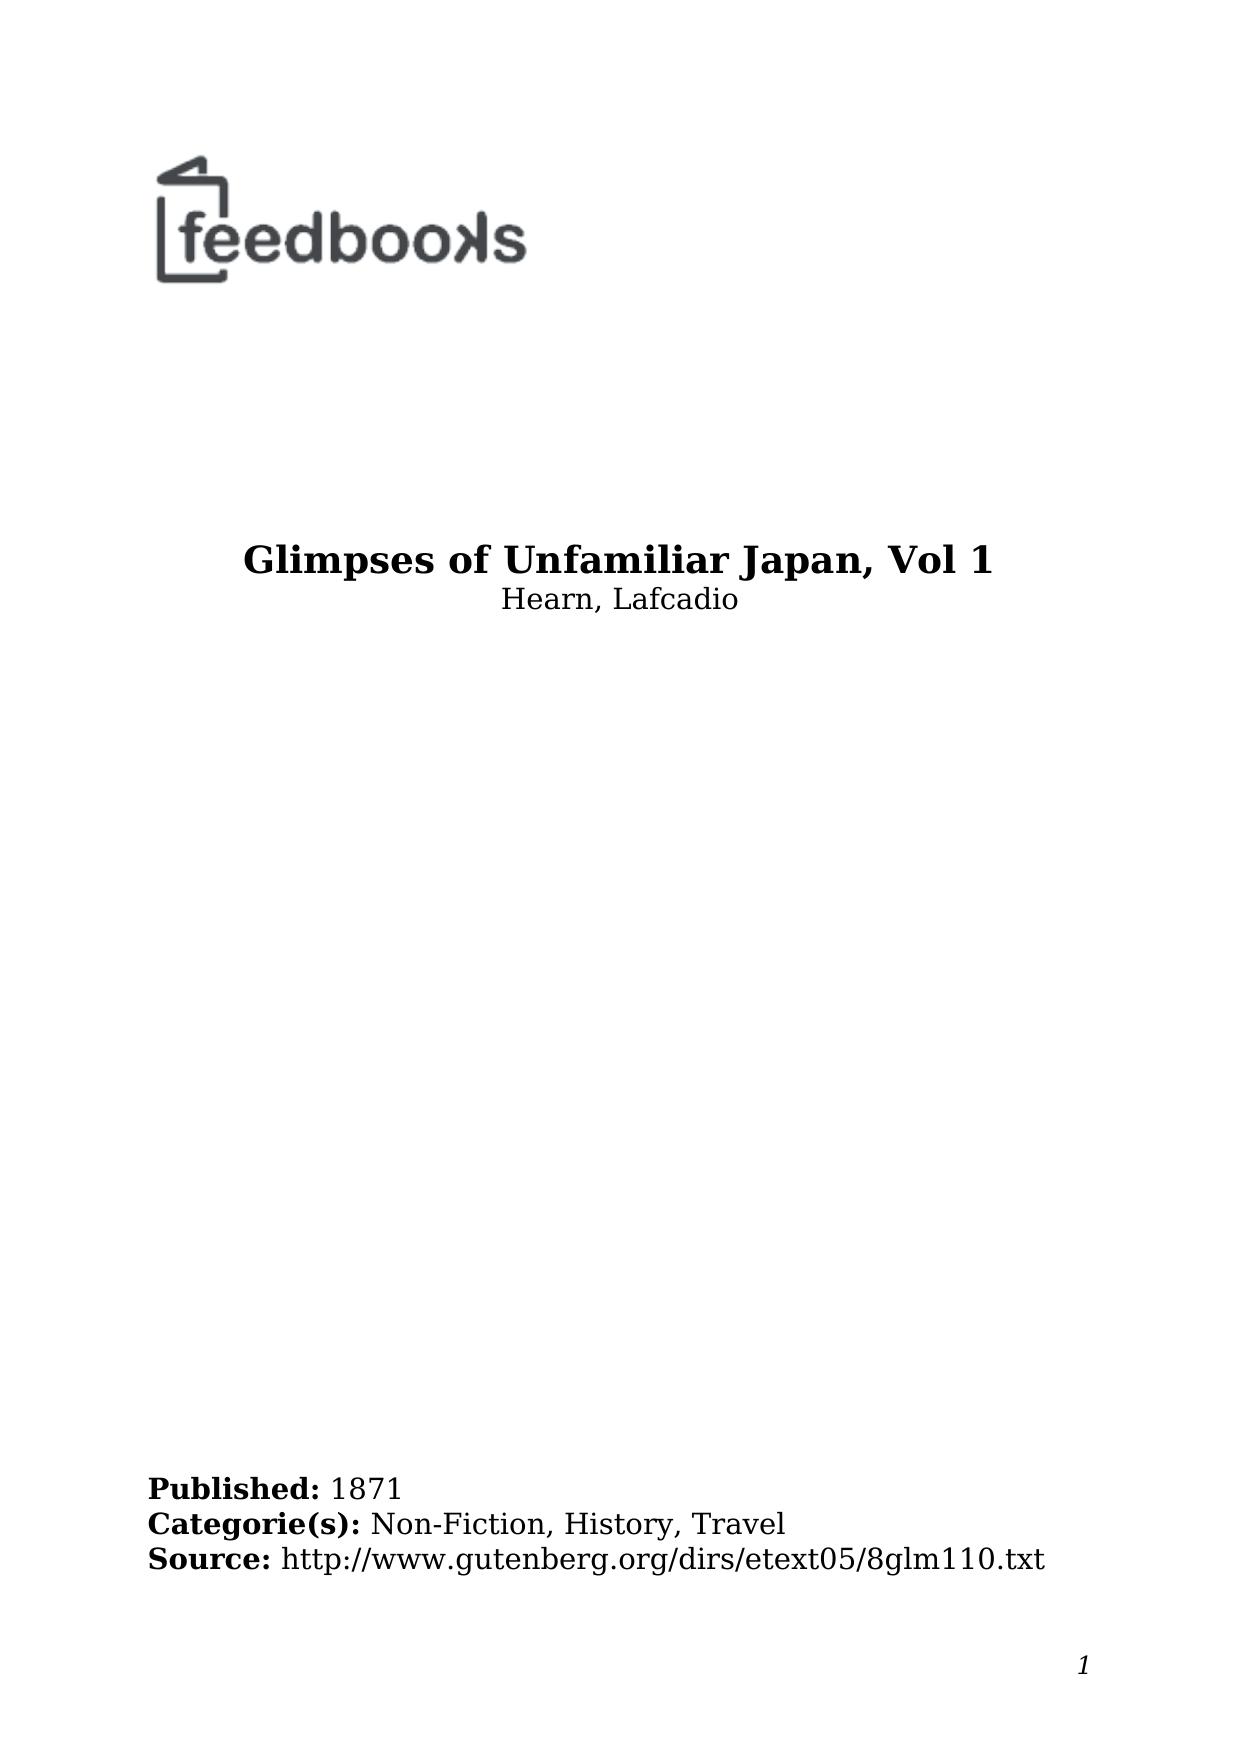 Glimpsesof Unfimiliar Japan Volume 1